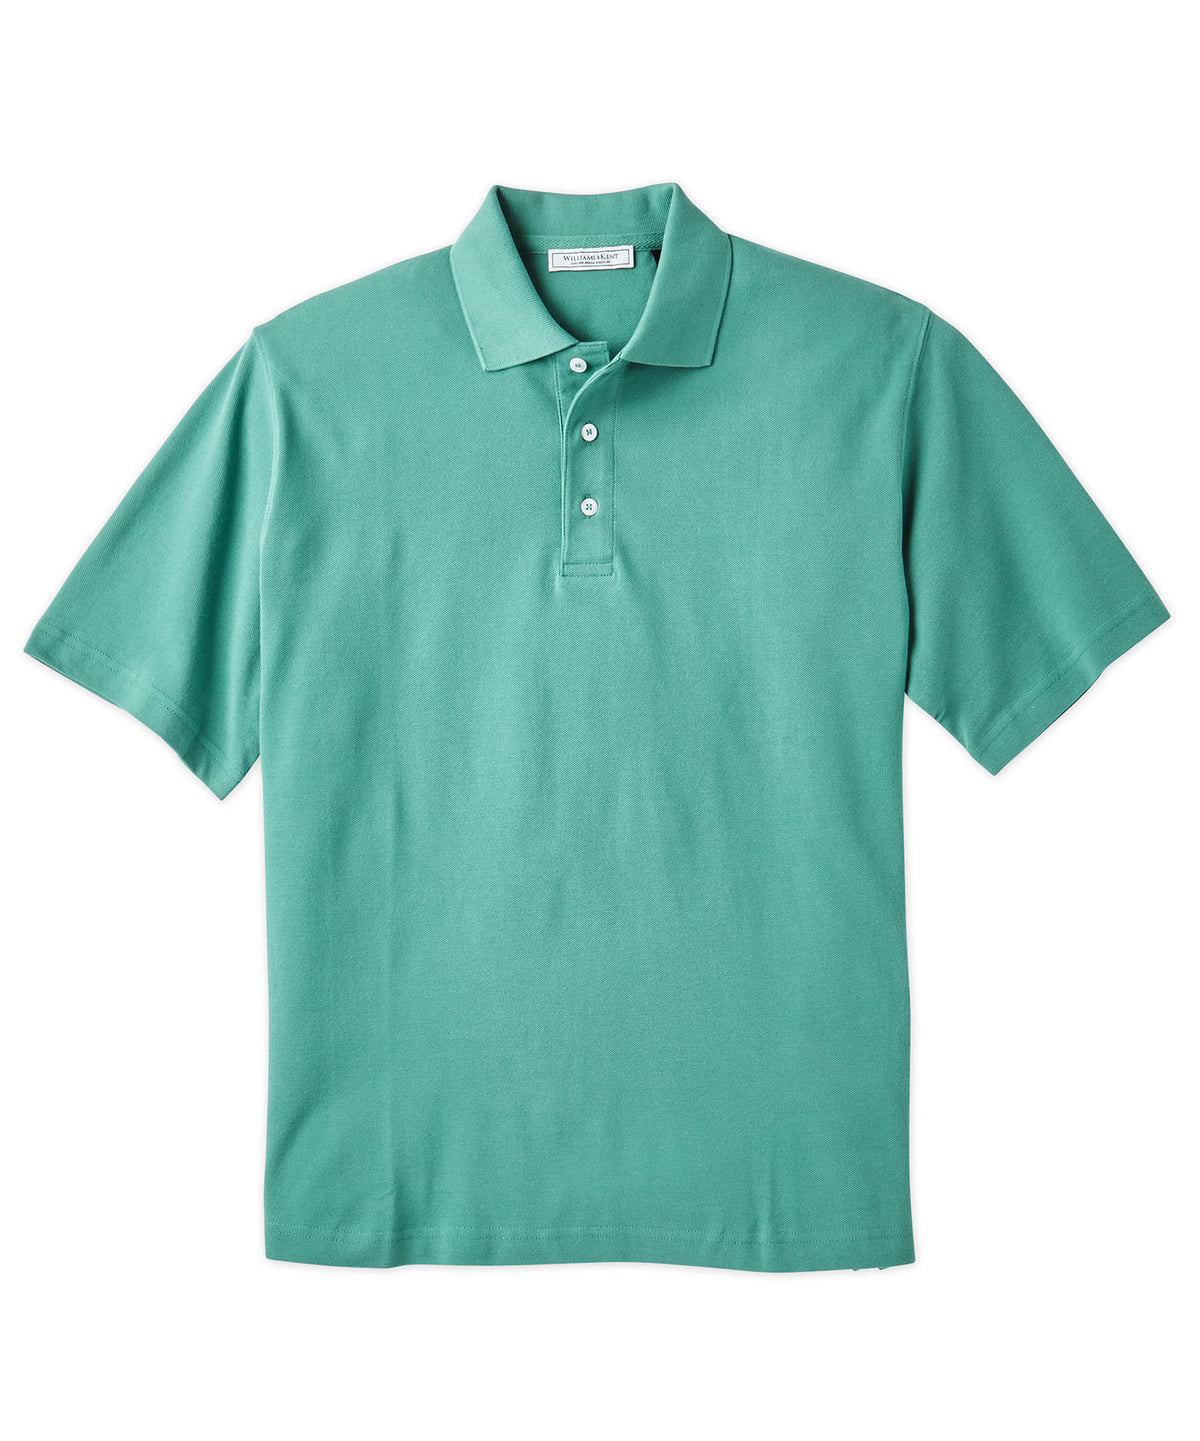 Pima Cotton Pique Knit Collar Polo Shirt